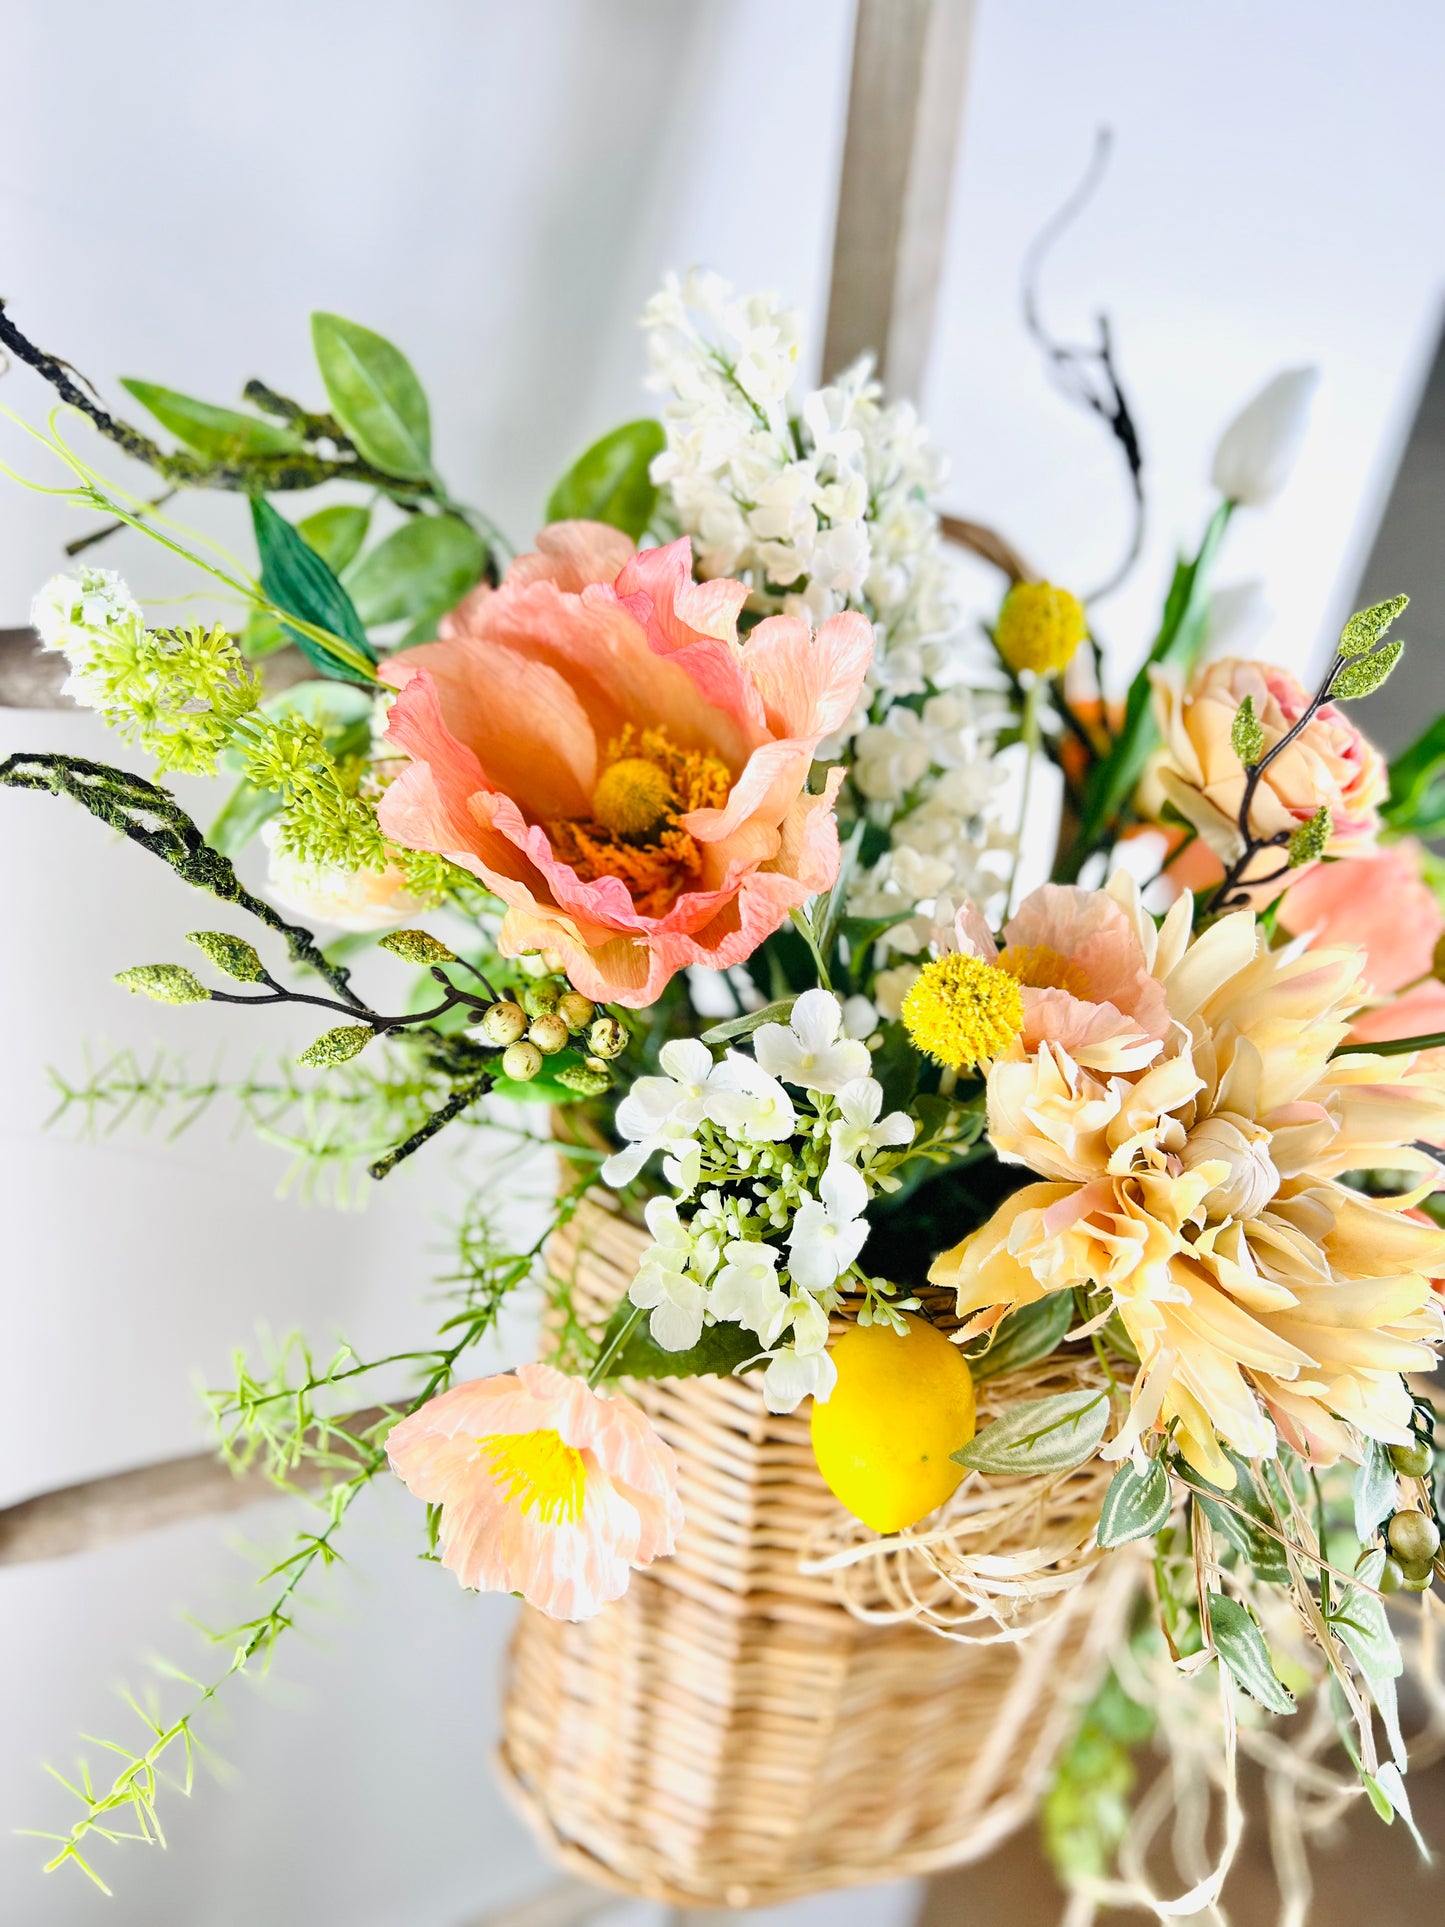 Spring/Summer Floral & Fruit Basket Wreath